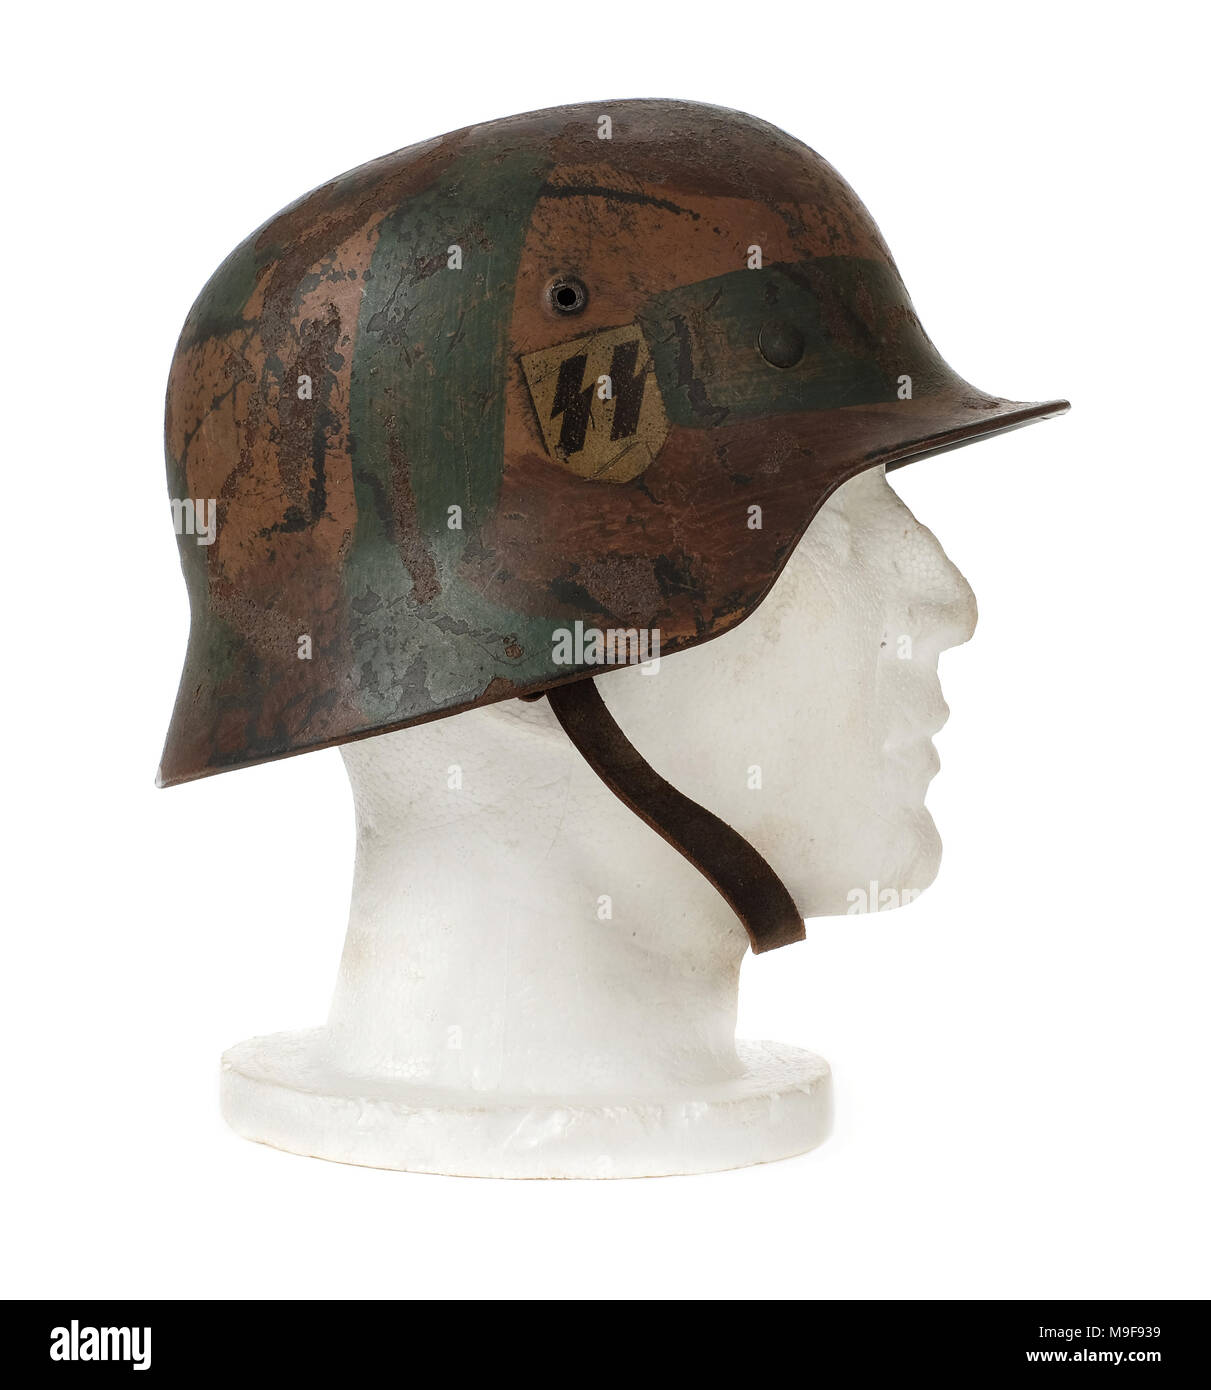 WW2 Troisième Reich allemand 'SS' casque d'acier (M40 Stahlhelm) à partir de 1940 avec les autocollants d'origine Swastika et SS, faite par Eisen und Huttenwerke A.G. Thale. Banque D'Images